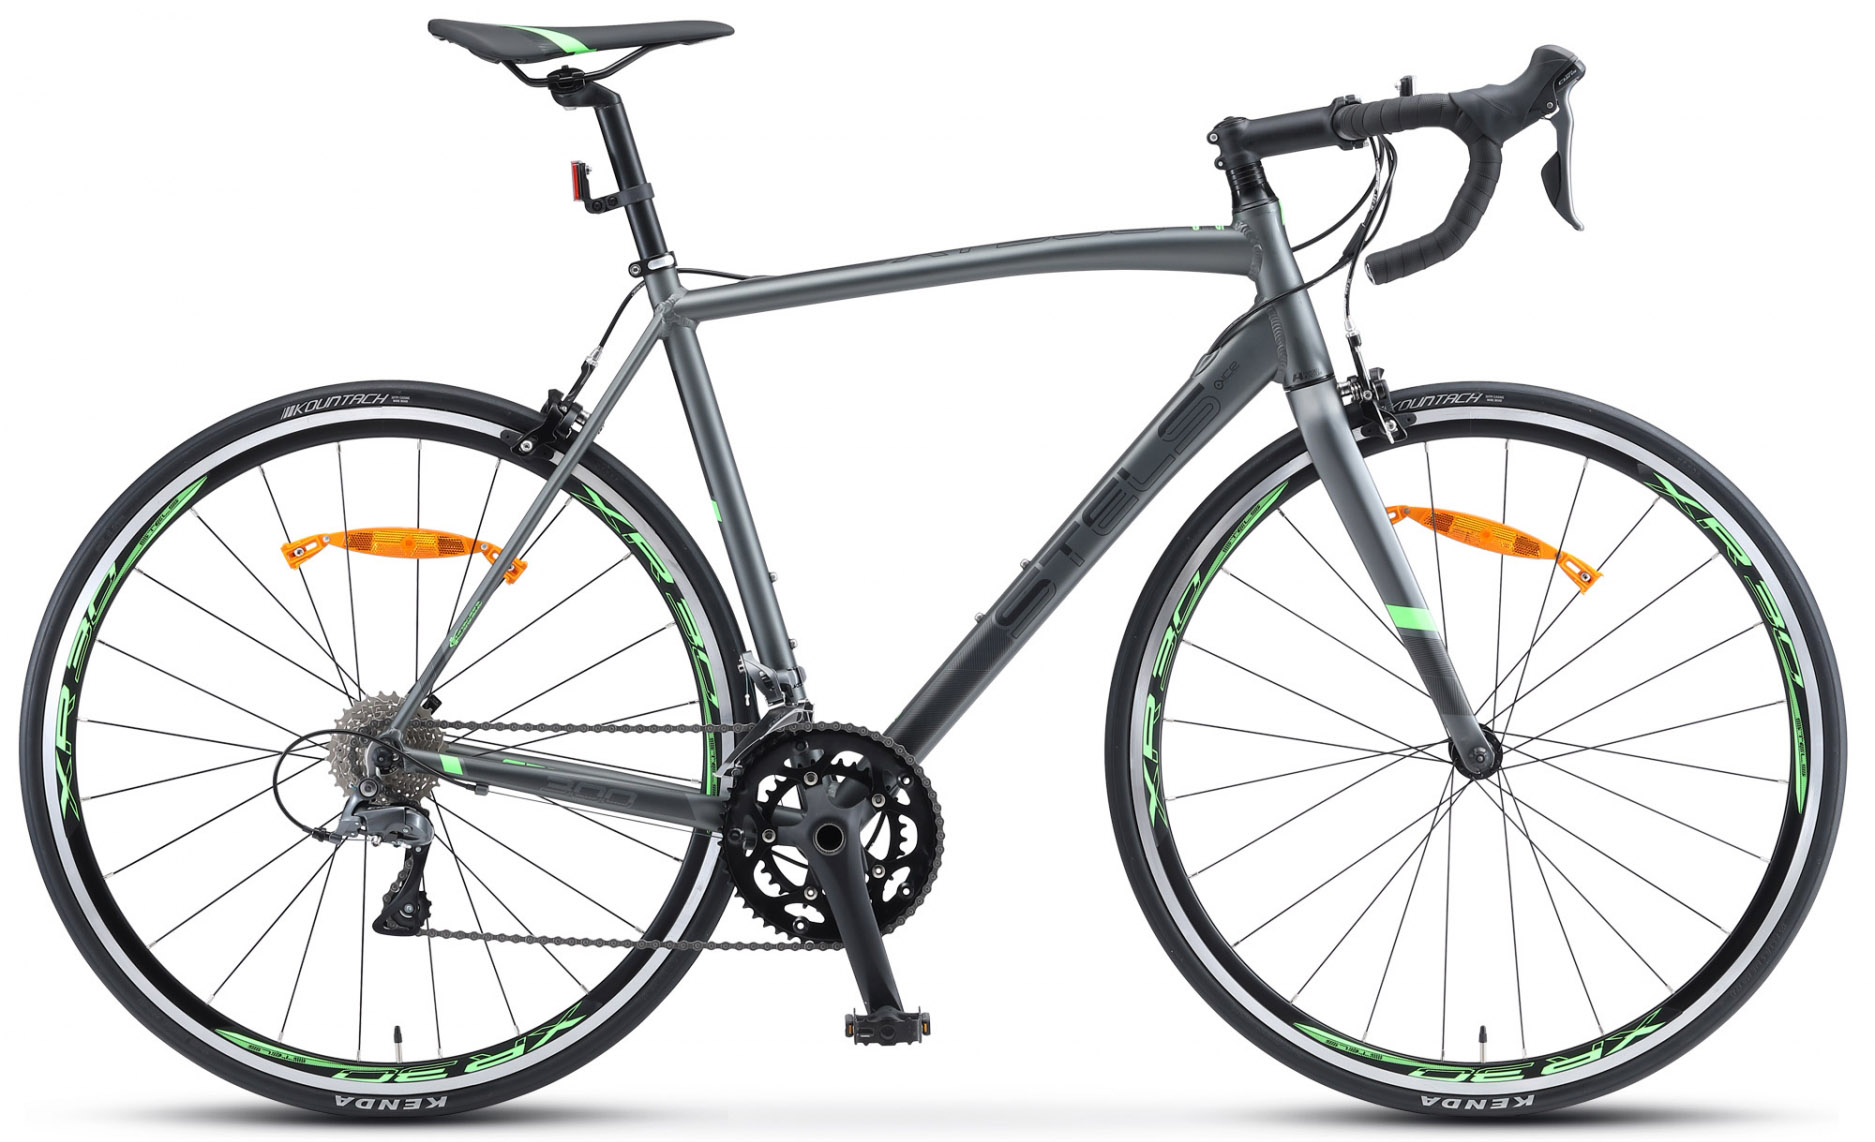  Велосипед Stels XT 300 V010 2020